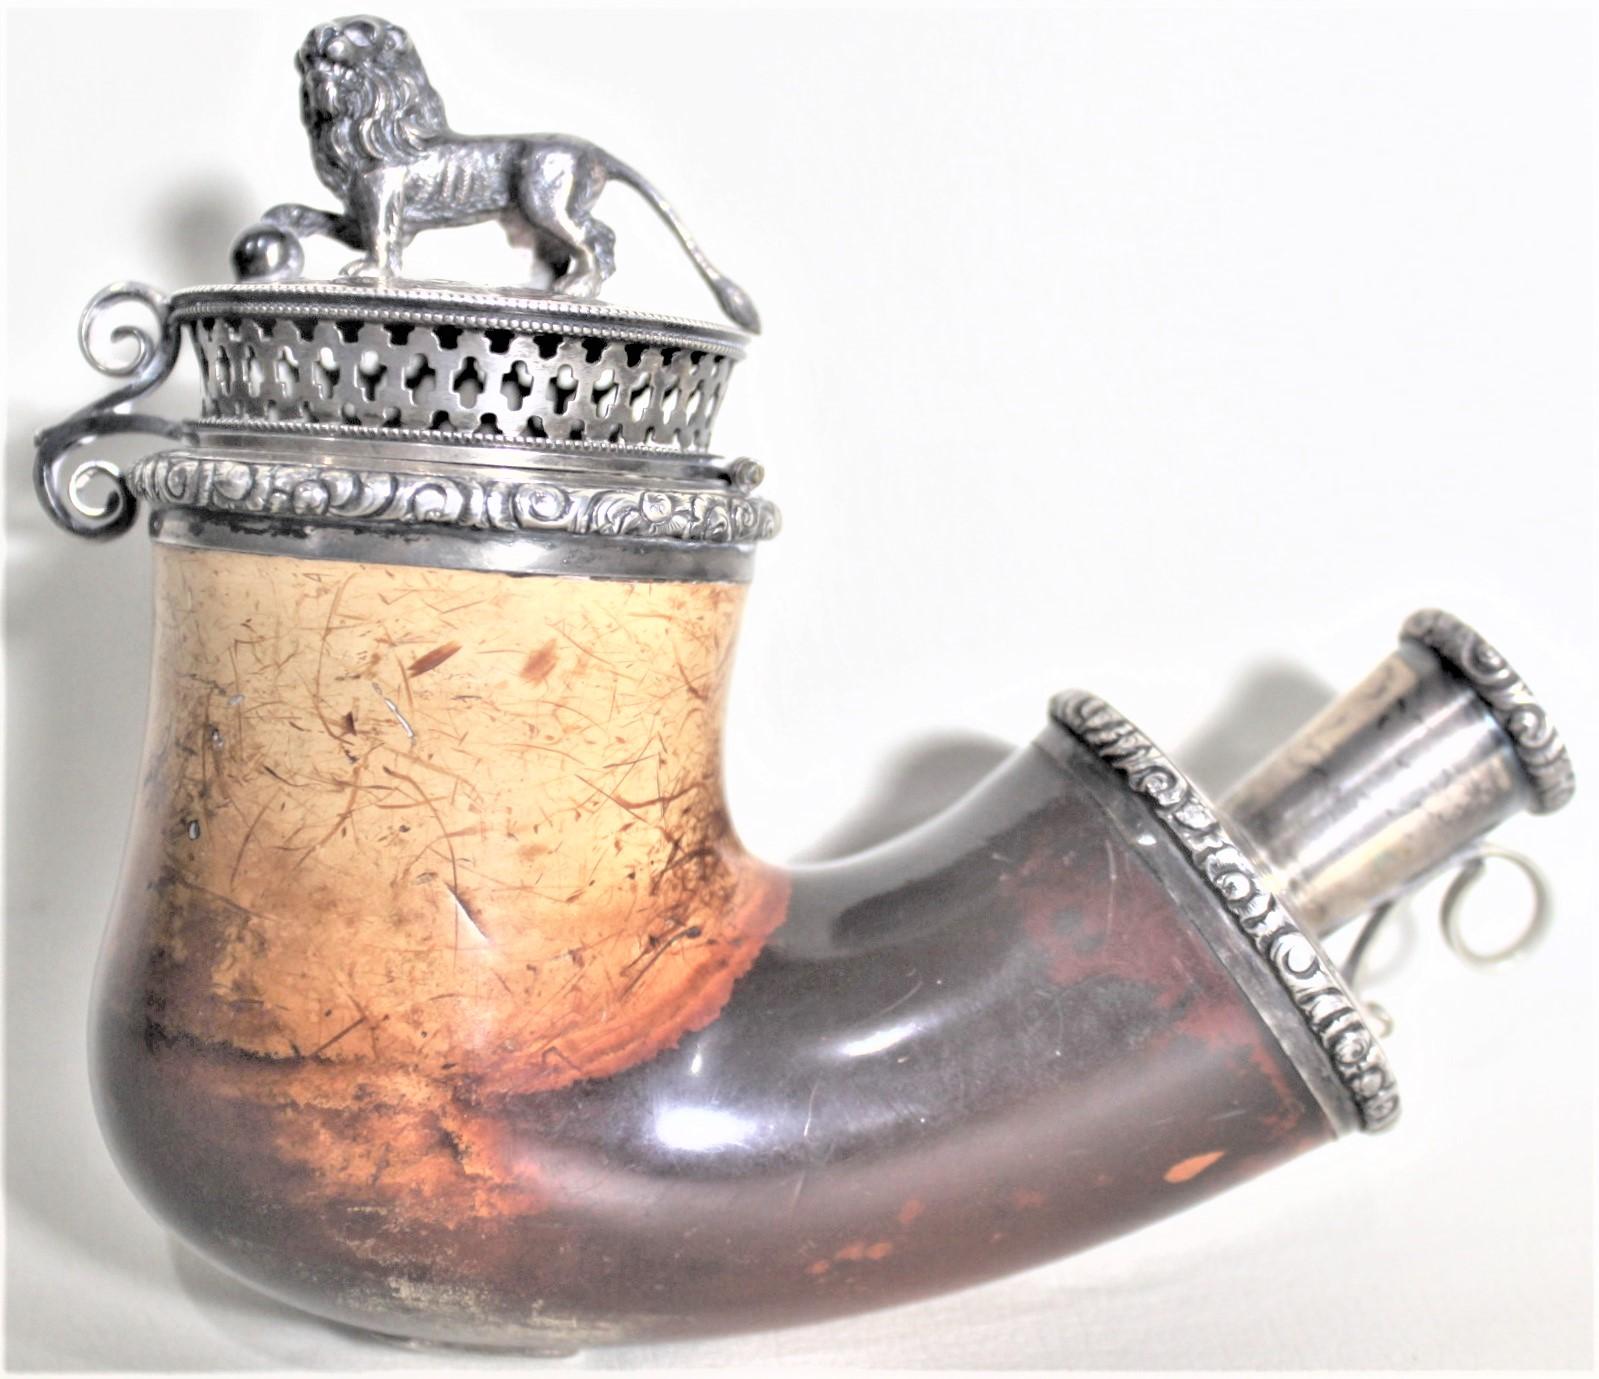 Dieser antike Meerschaum-Pfeifenkopf ist unsigniert, wurde aber vermutlich um 1900 in Deutschland oder Österreich im Biedermeier-Stil hergestellt. Der Pfeifenkörper besteht aus Meerschaum und ist mit Silberbeschlägen versehen, auf denen ein